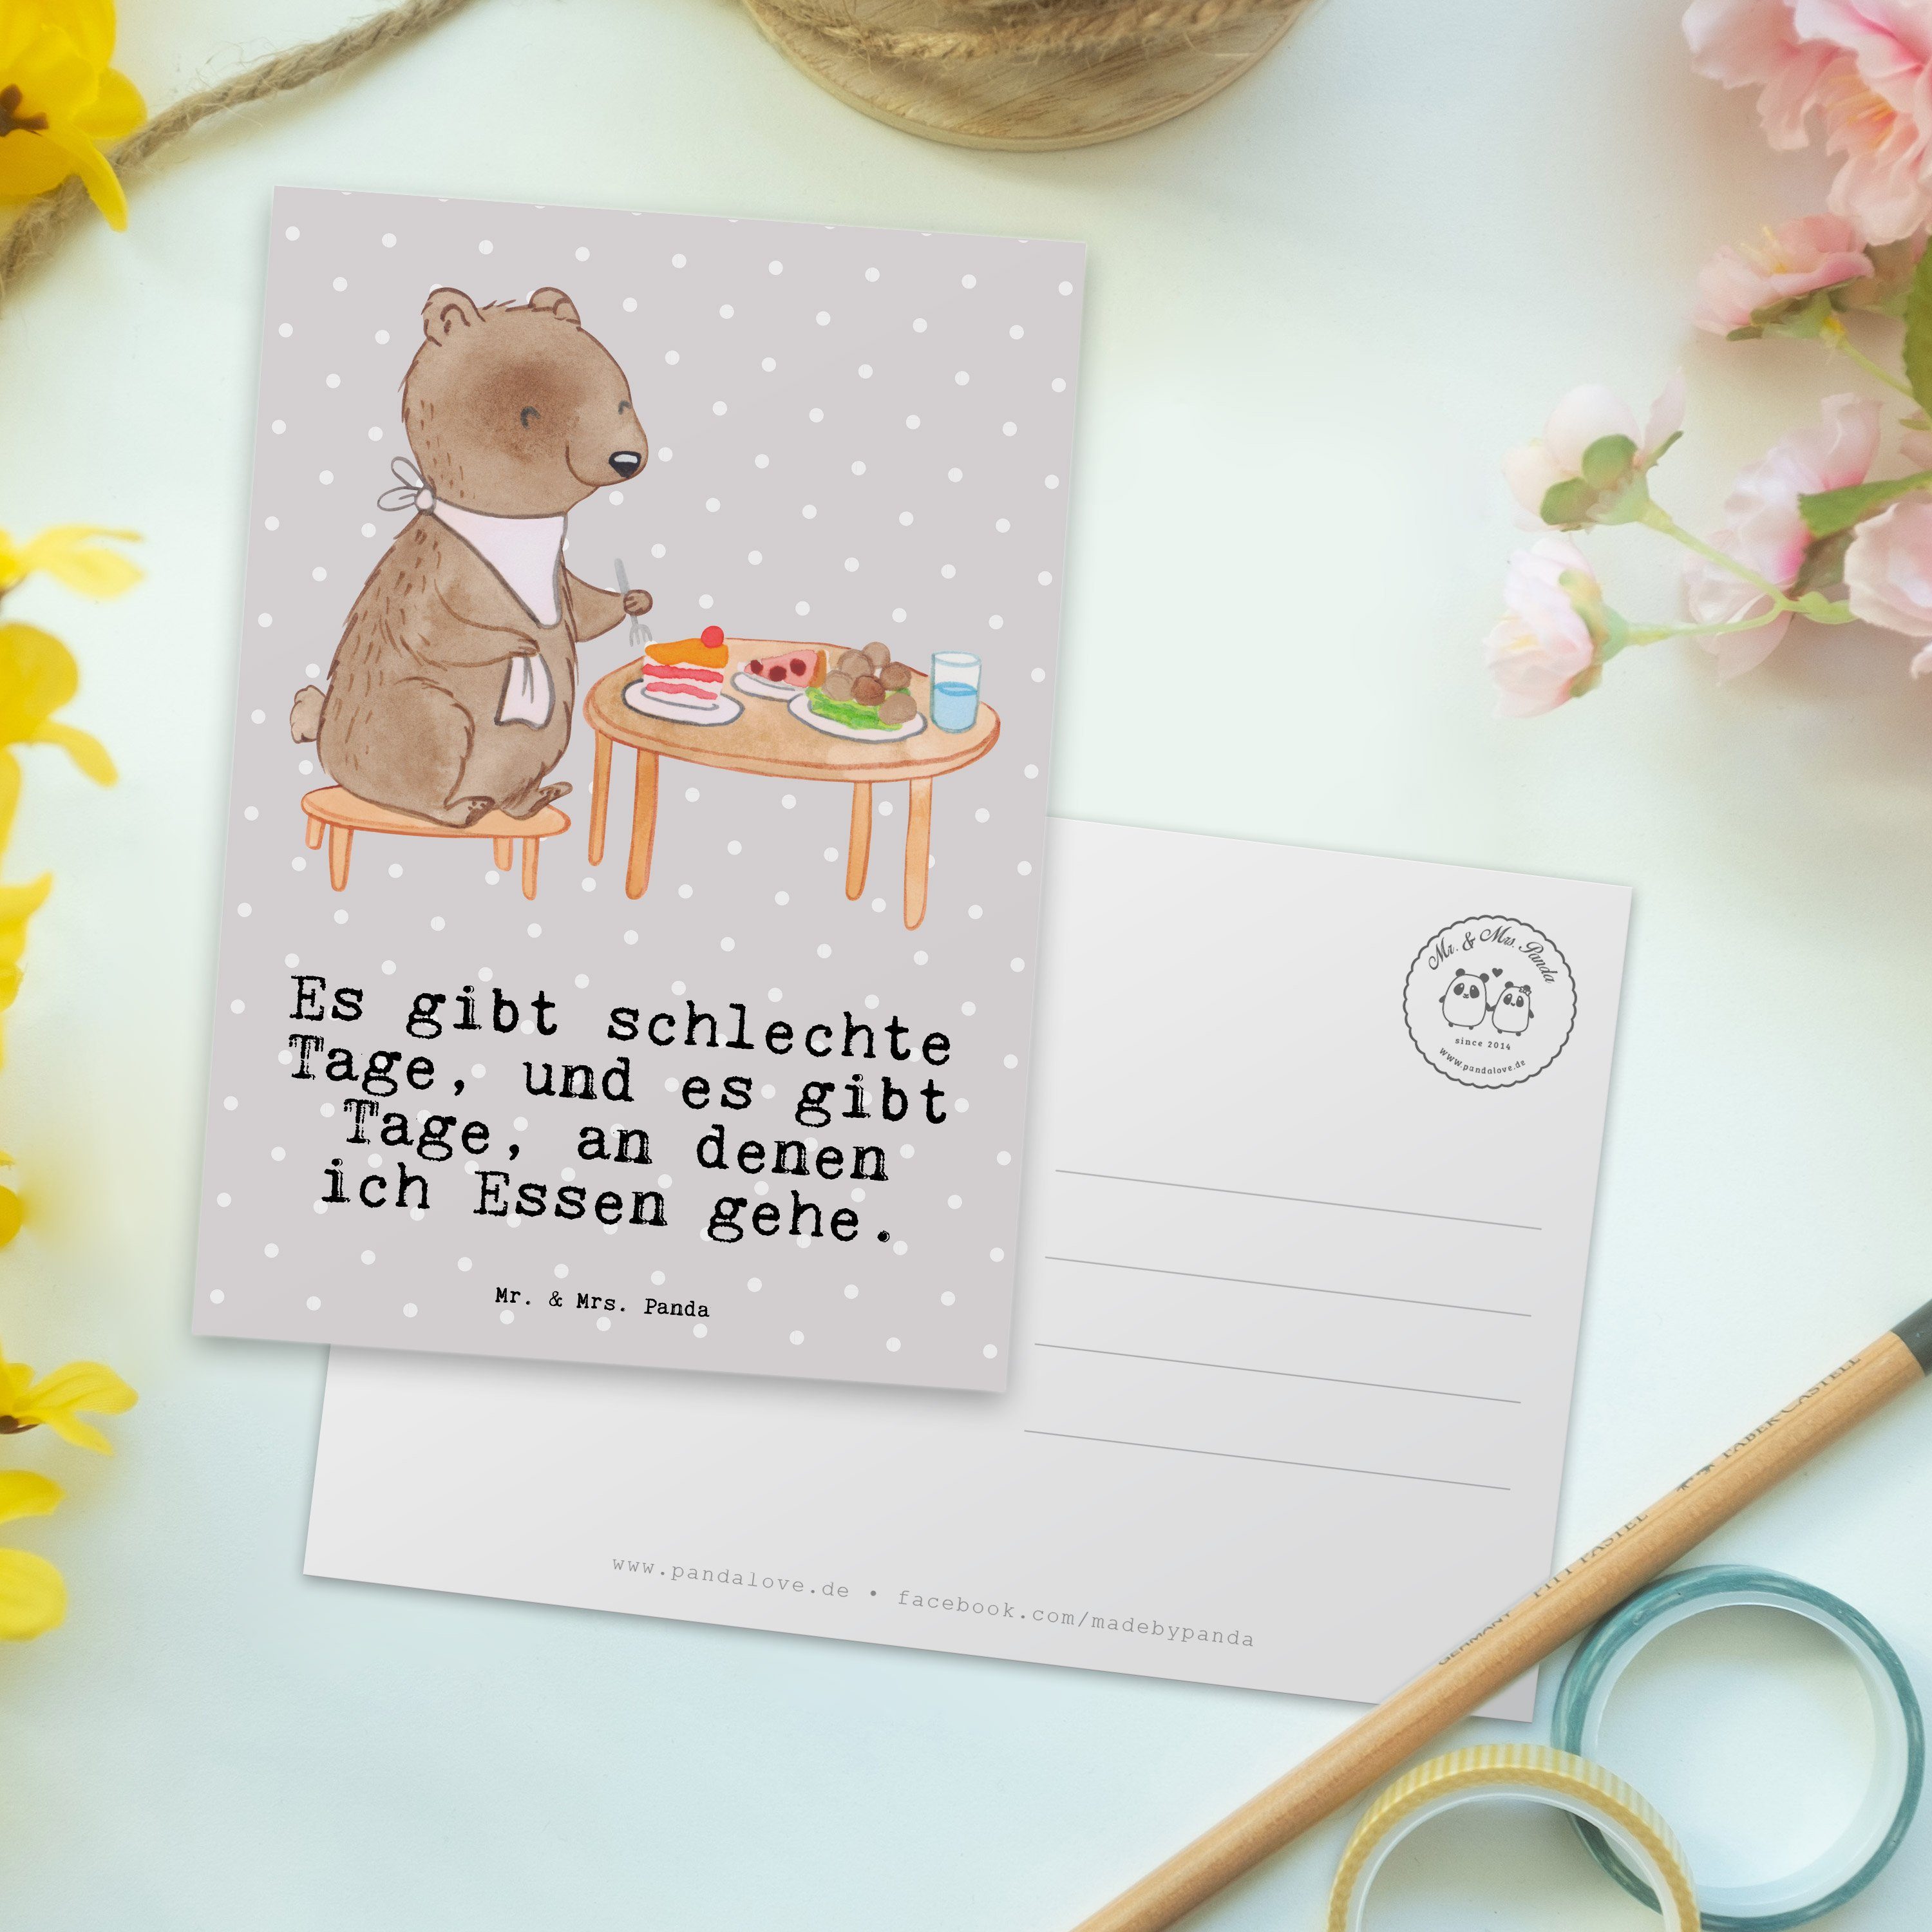 Essen Panda Pastell Geschenk, gehen Postkarte - Grau - & Geburtstagskarte, Mrs. Mr. Res Tage Bär